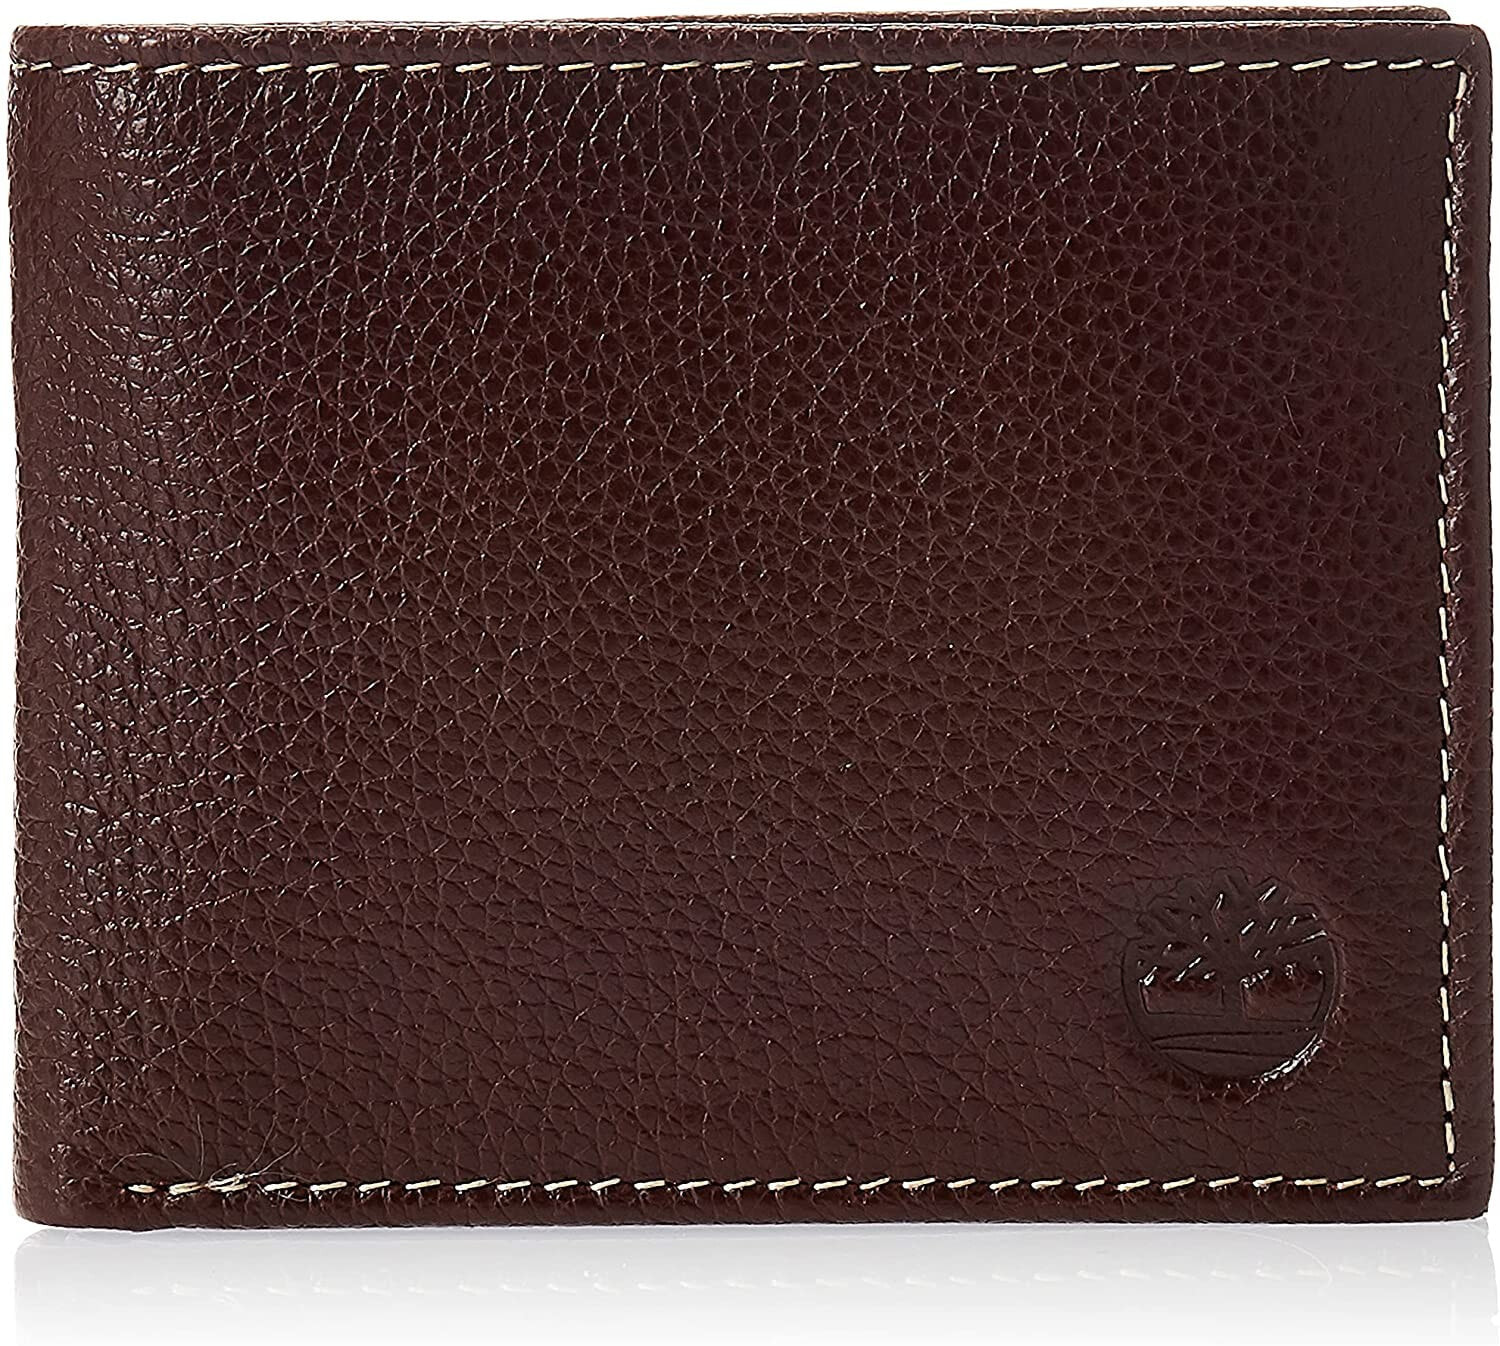 Мужское портмоне кожаное горизонтальное черное без застежки  	Timberland Men's Leather Wallet with Attached Flip Pocket